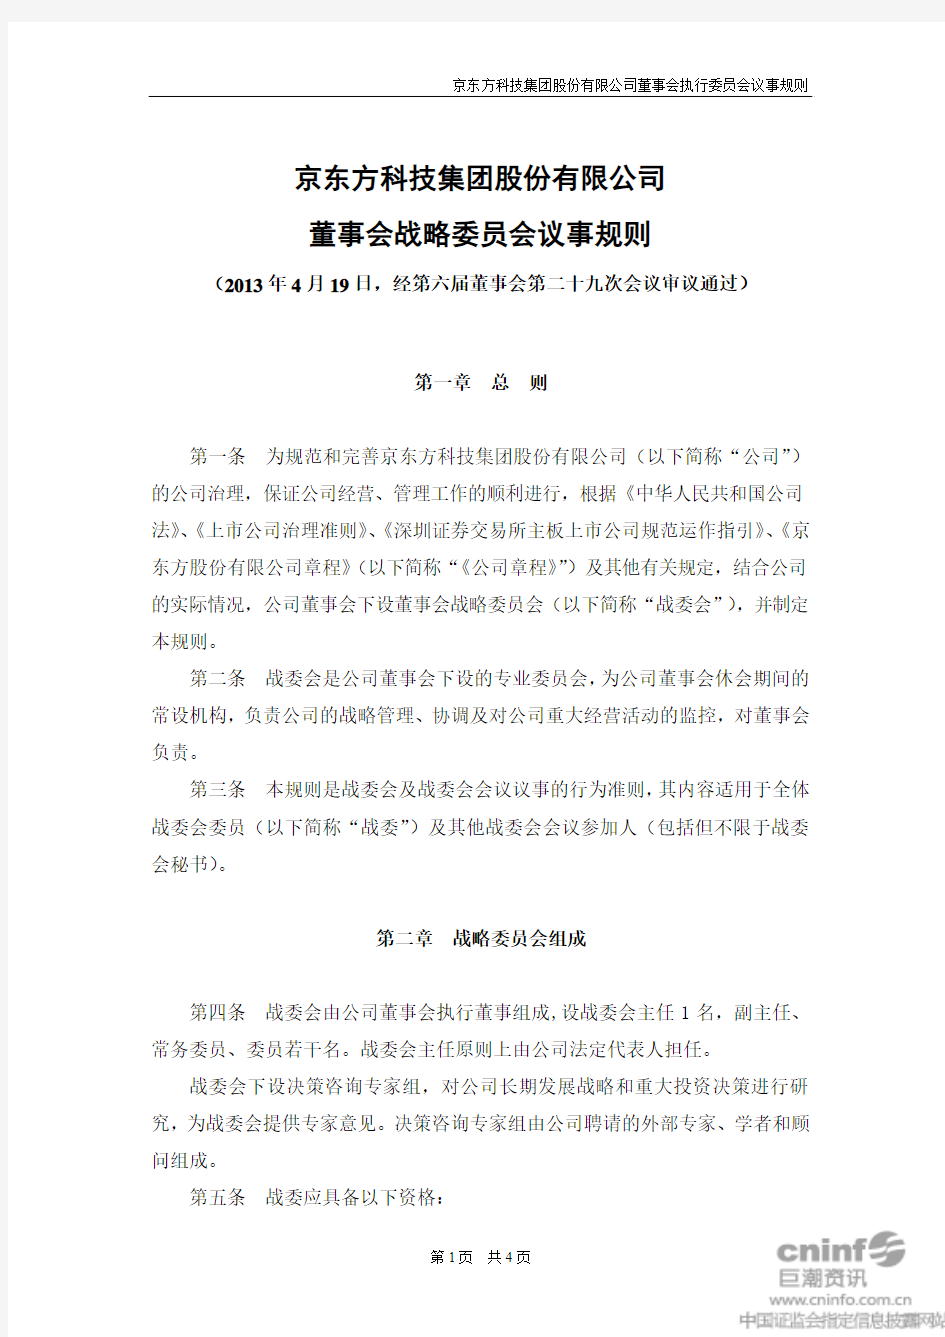 京东方科技集团股份有限公司 董事会战略委员会议事规则